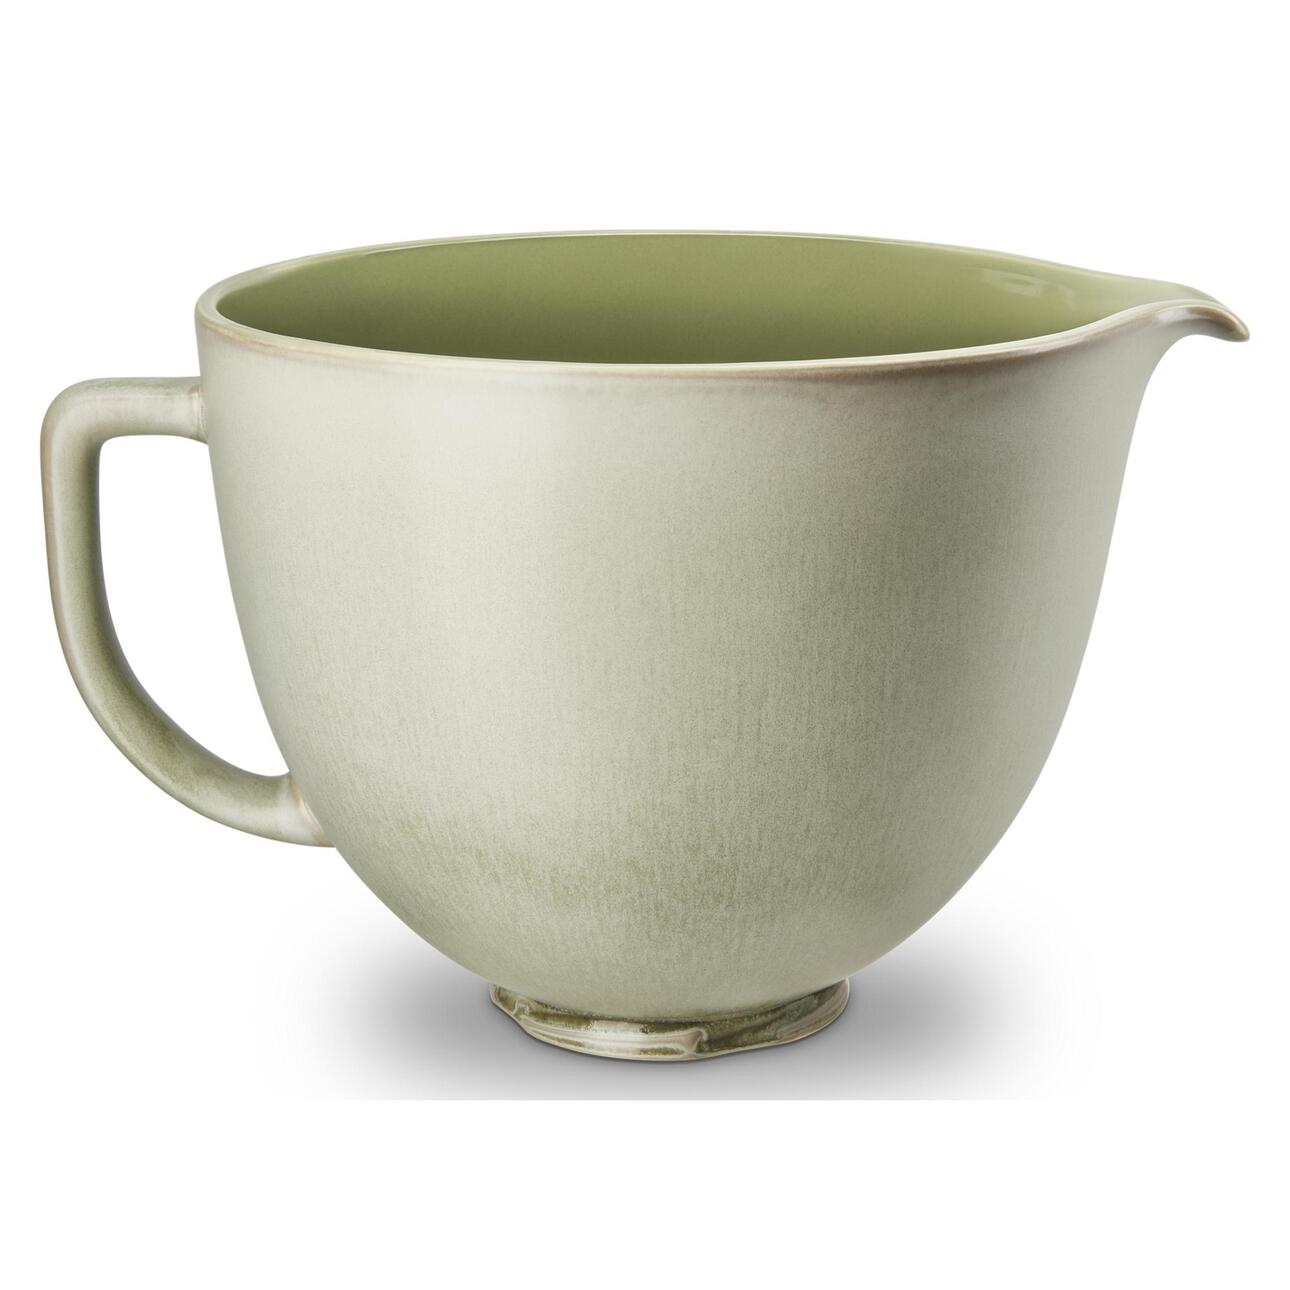 KitchenAid 5 Quart Sage Leaf Ceramic Bowl, KSM2CB5P - image 1 of 5